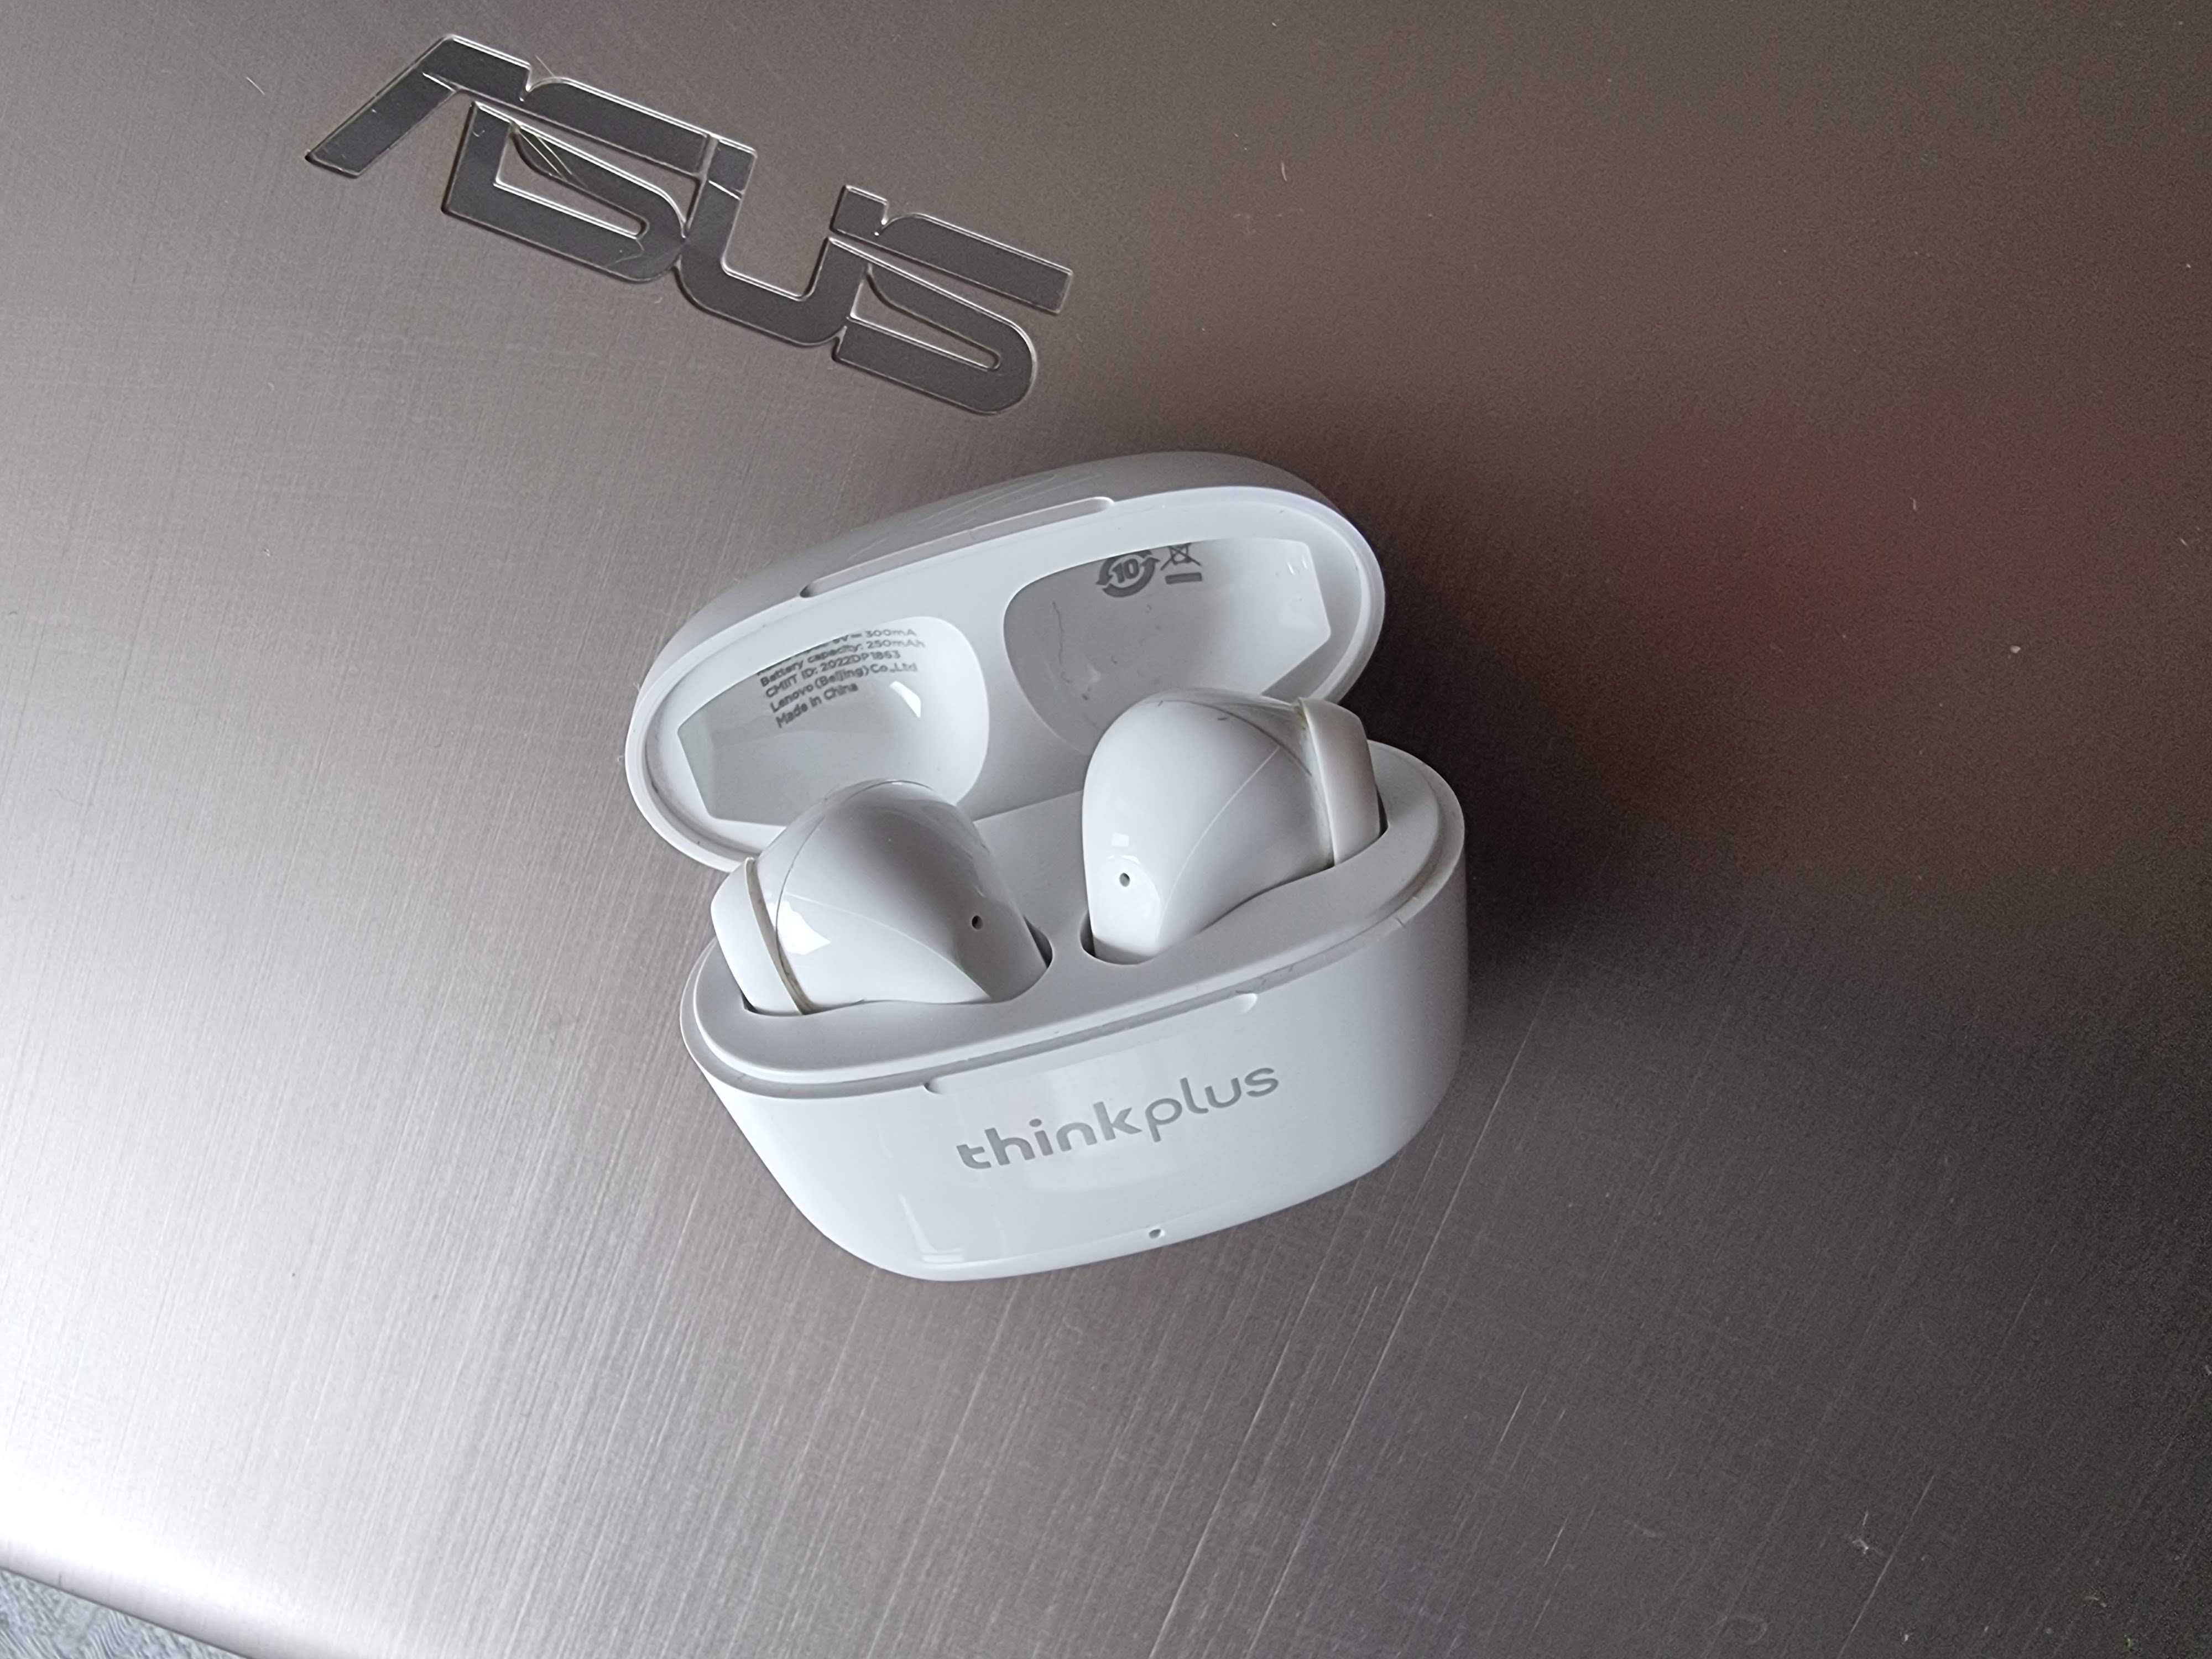 Безжични слушалки Lenovo ThinkPlus LP40 Pro